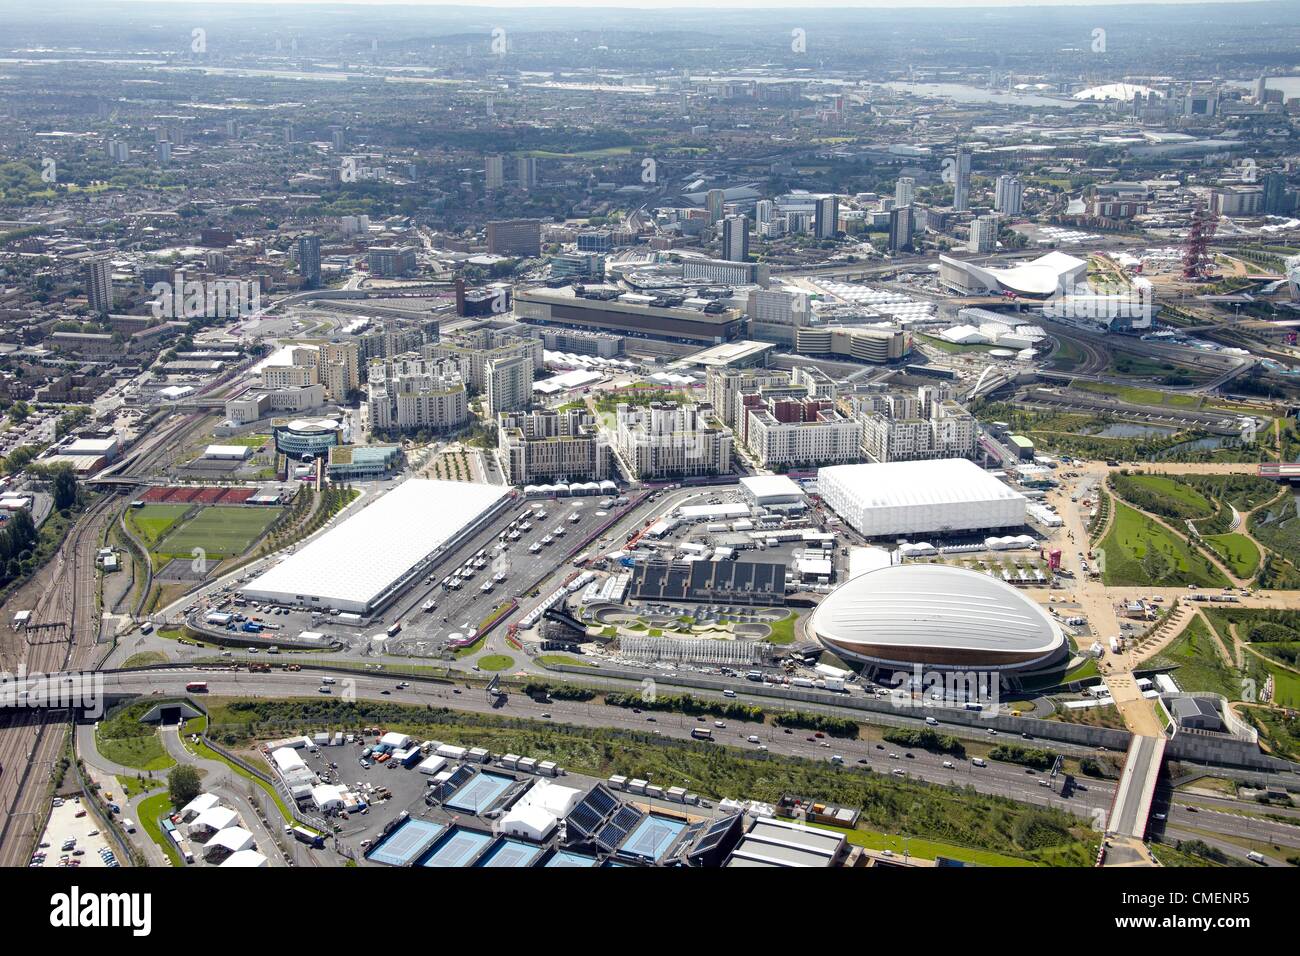 Photographie aérienne au sud-est du parc olympique, avec le vélodrome, piste de BMX, basket-ball Arena et le Centre International de Radio et télévision. Le site olympique de Londres 2012, Stratford Londres Banque D'Images